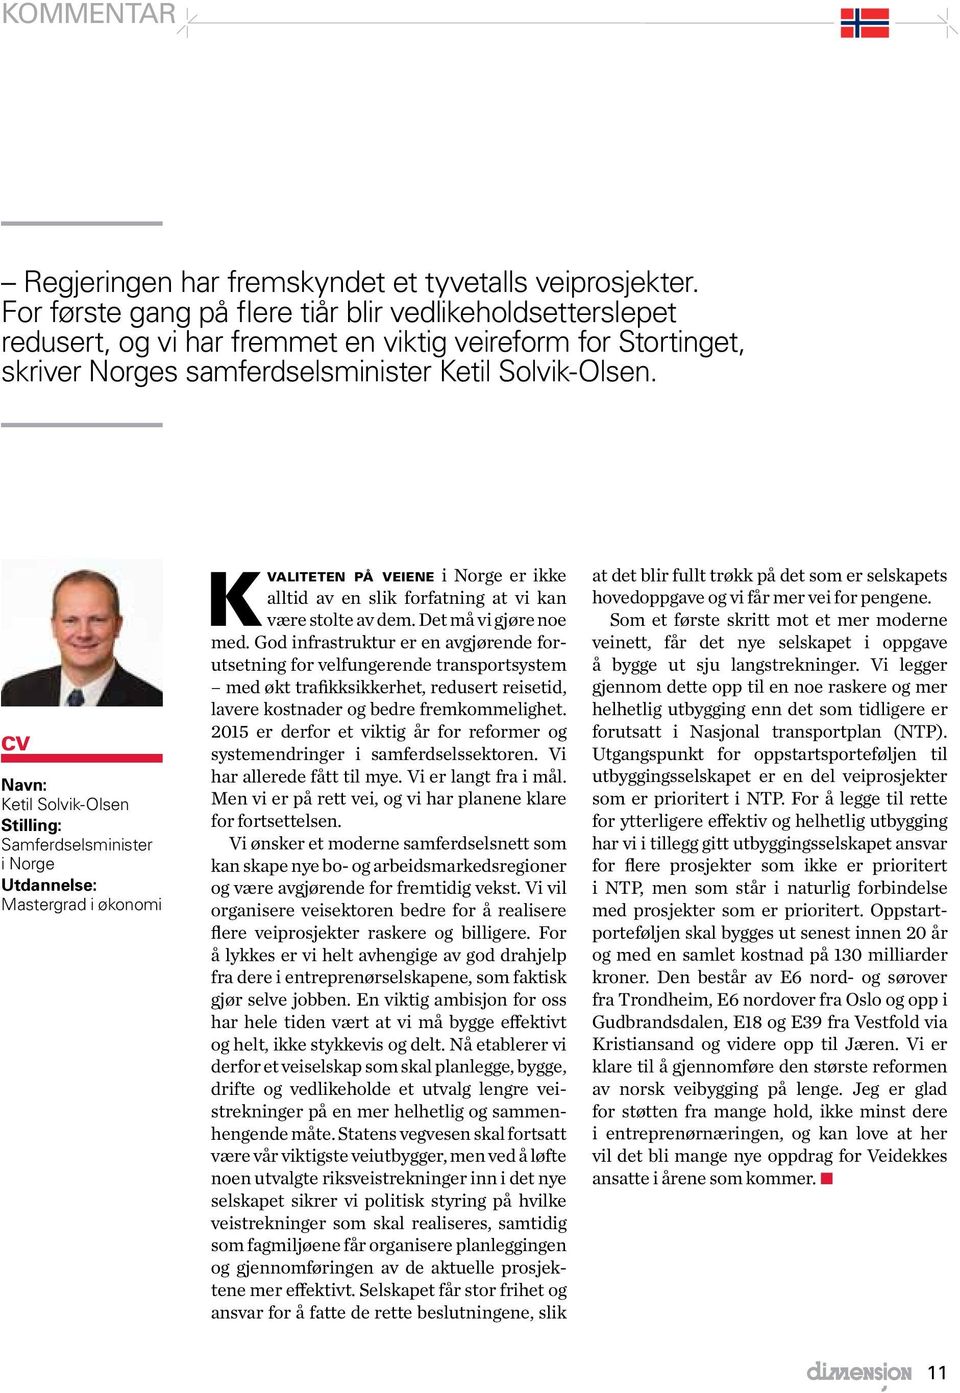 CV Navn: Ketil Solvik-Olsen Stilling: Samferdselsminister i Norge Utdannelse: Mastergrad i økonomi K valiteten på veiene i Norge er ikke alltid av en slik forfatning at vi kan være stolte av dem.